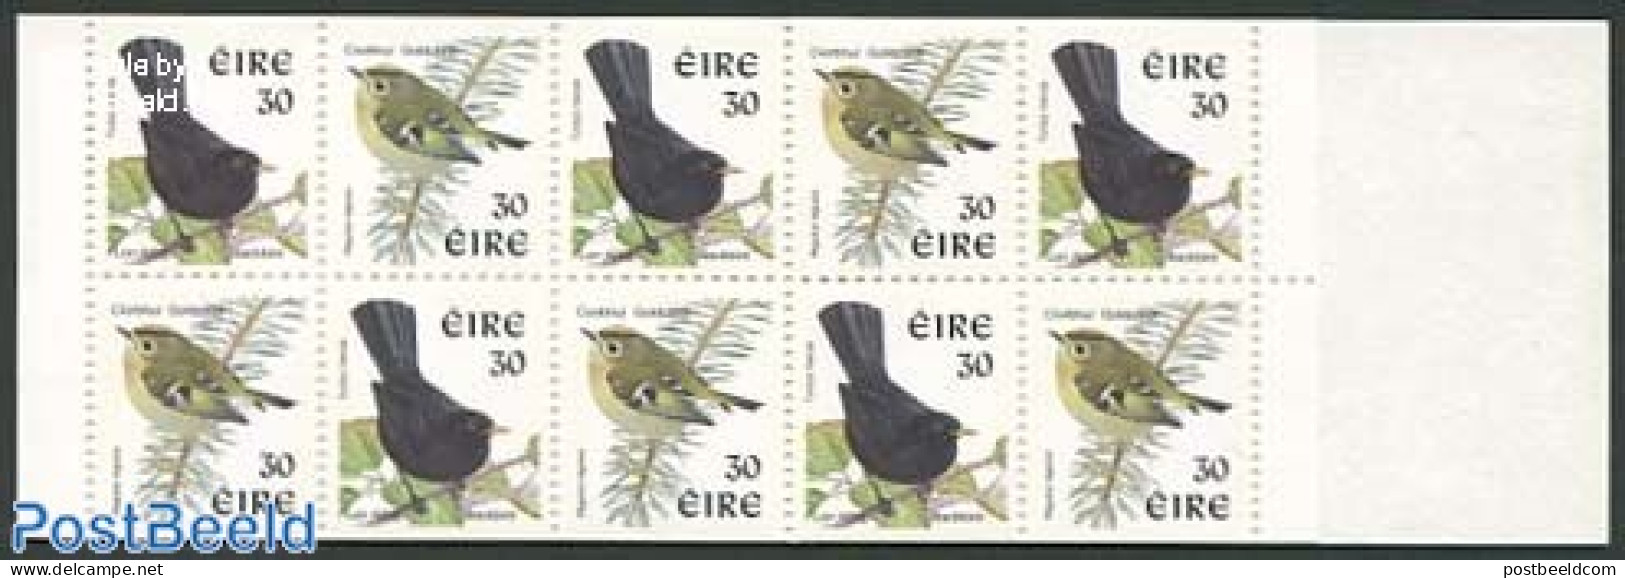 Ireland 1998 Birds Booklet, Mint NH, Nature - Birds - Stamp Booklets - Ongebruikt